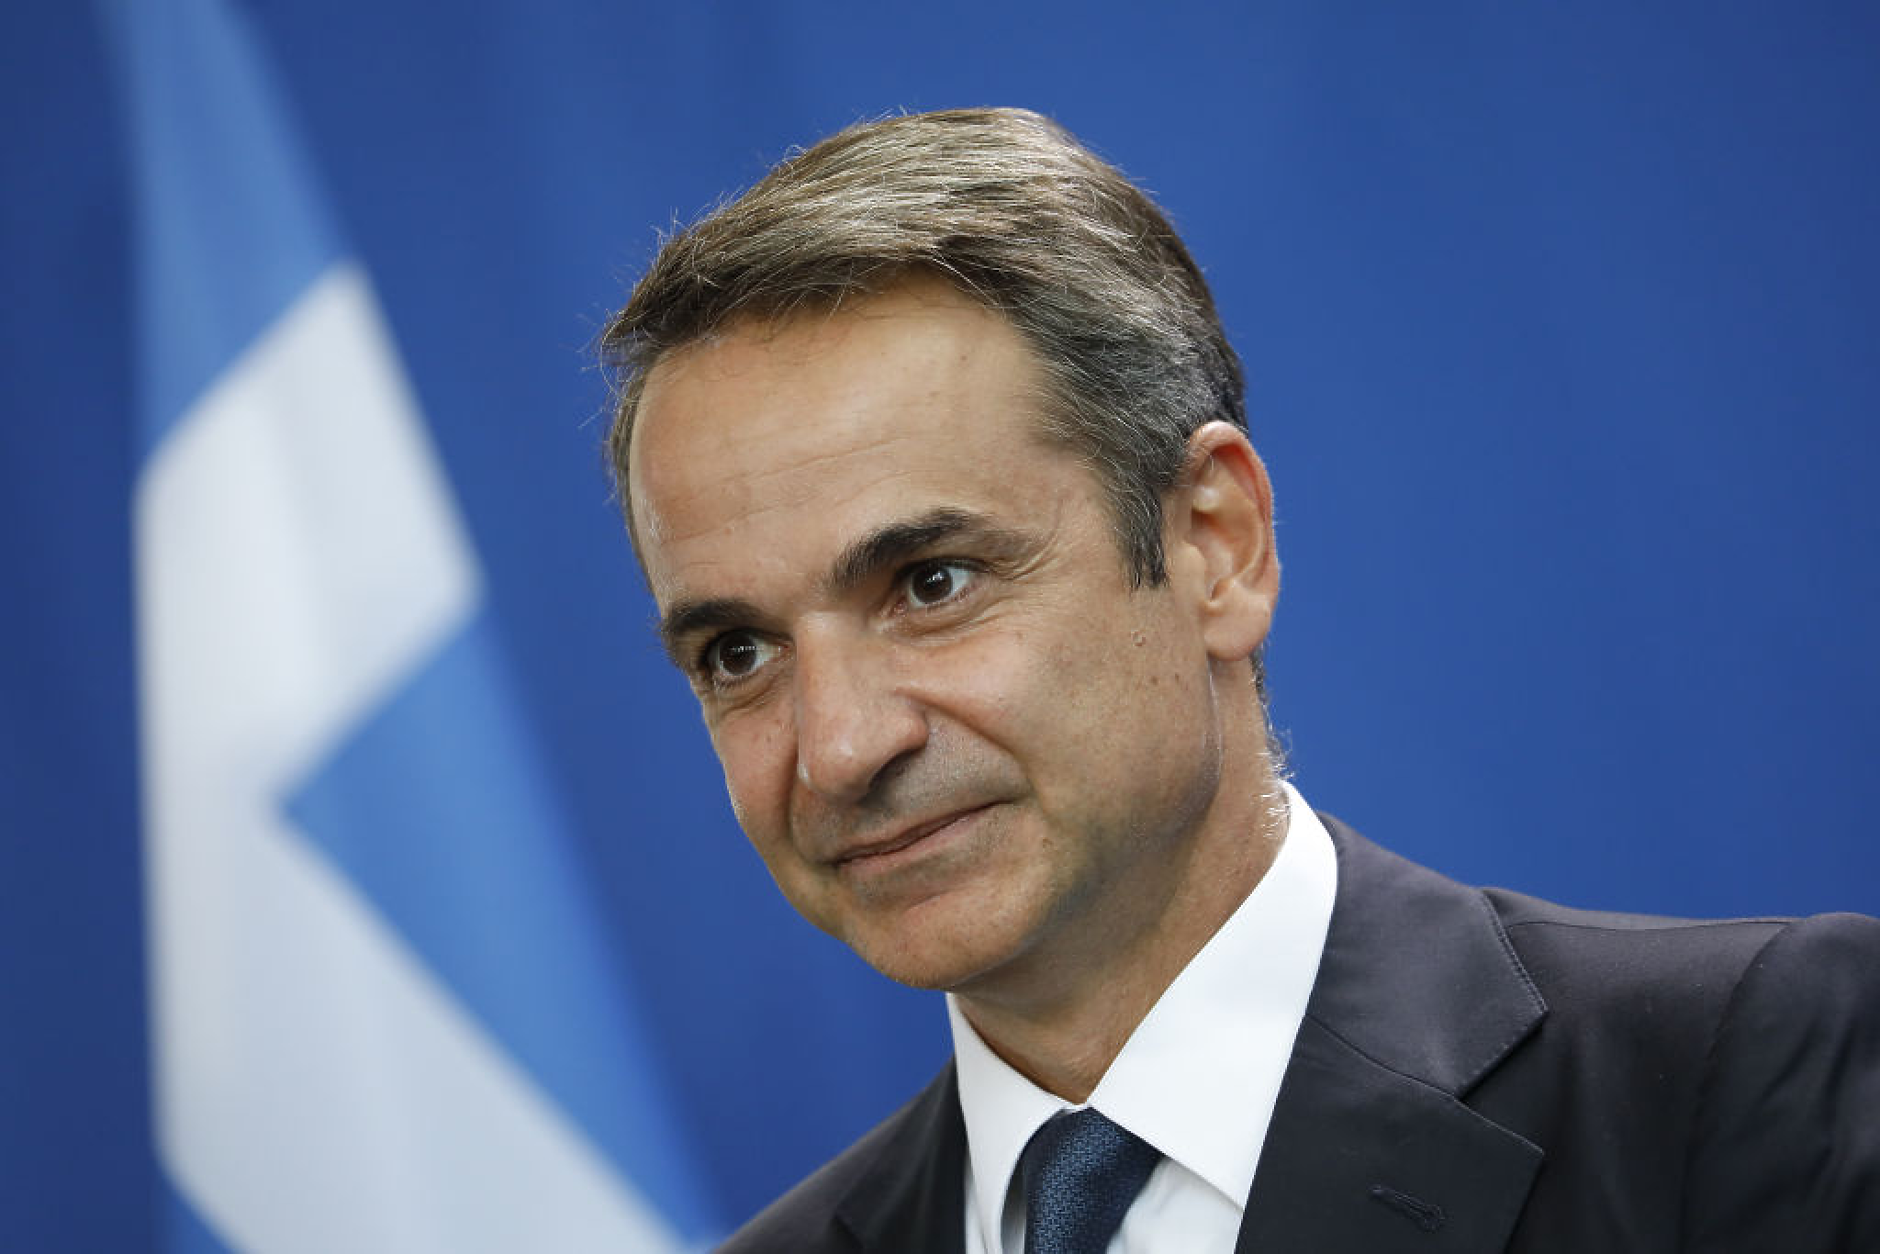 Гръцкият премиер направи промени в състава на правителството